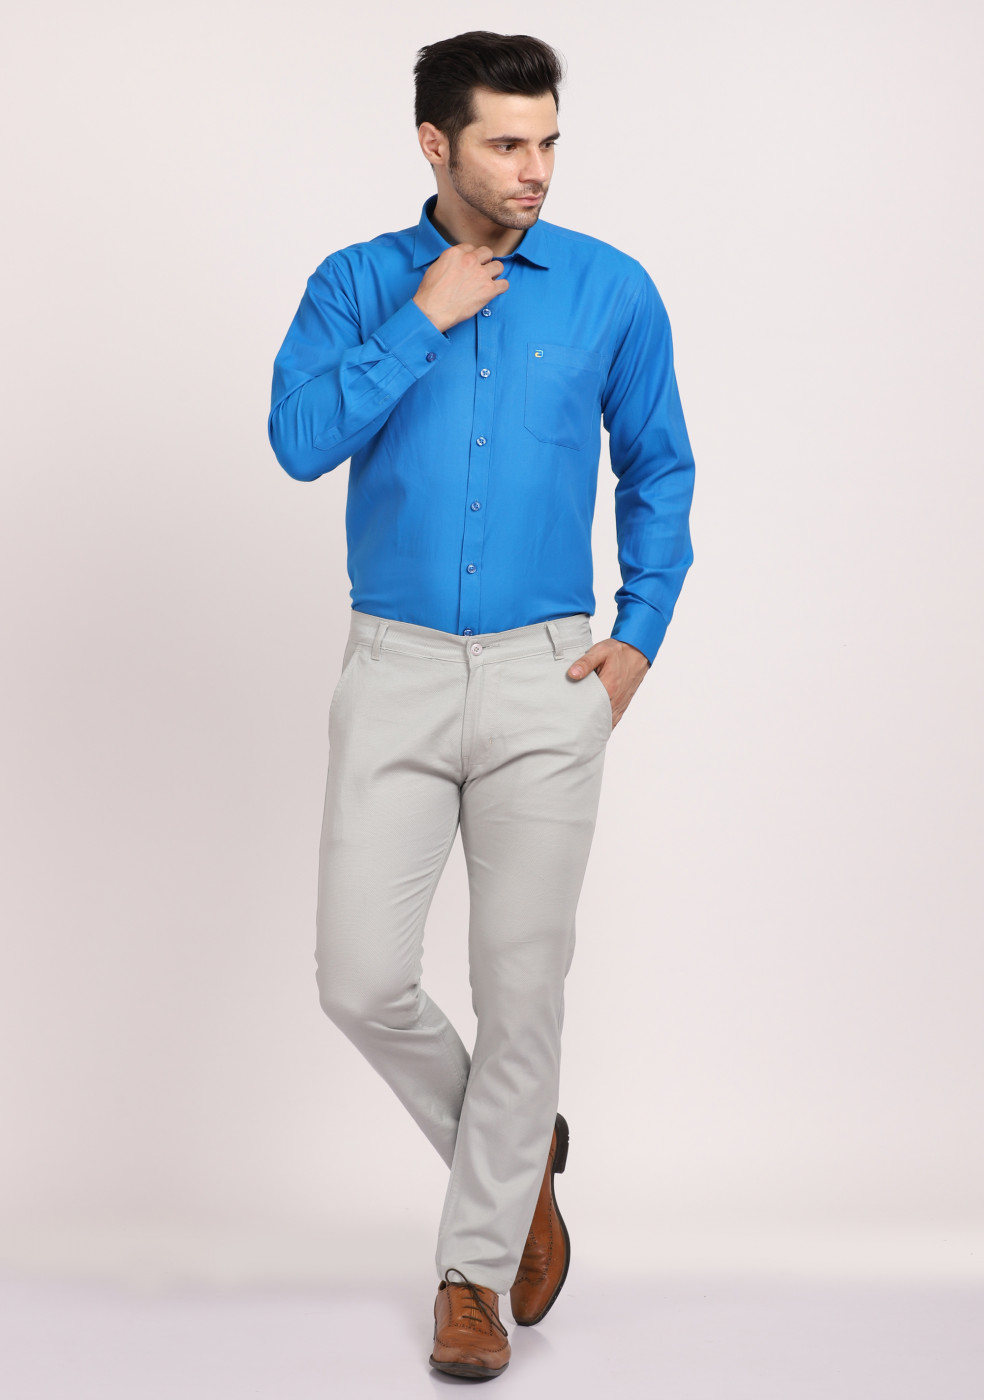 ASHTOM Blue Plain Cotton Shirt For Men Regular Fit